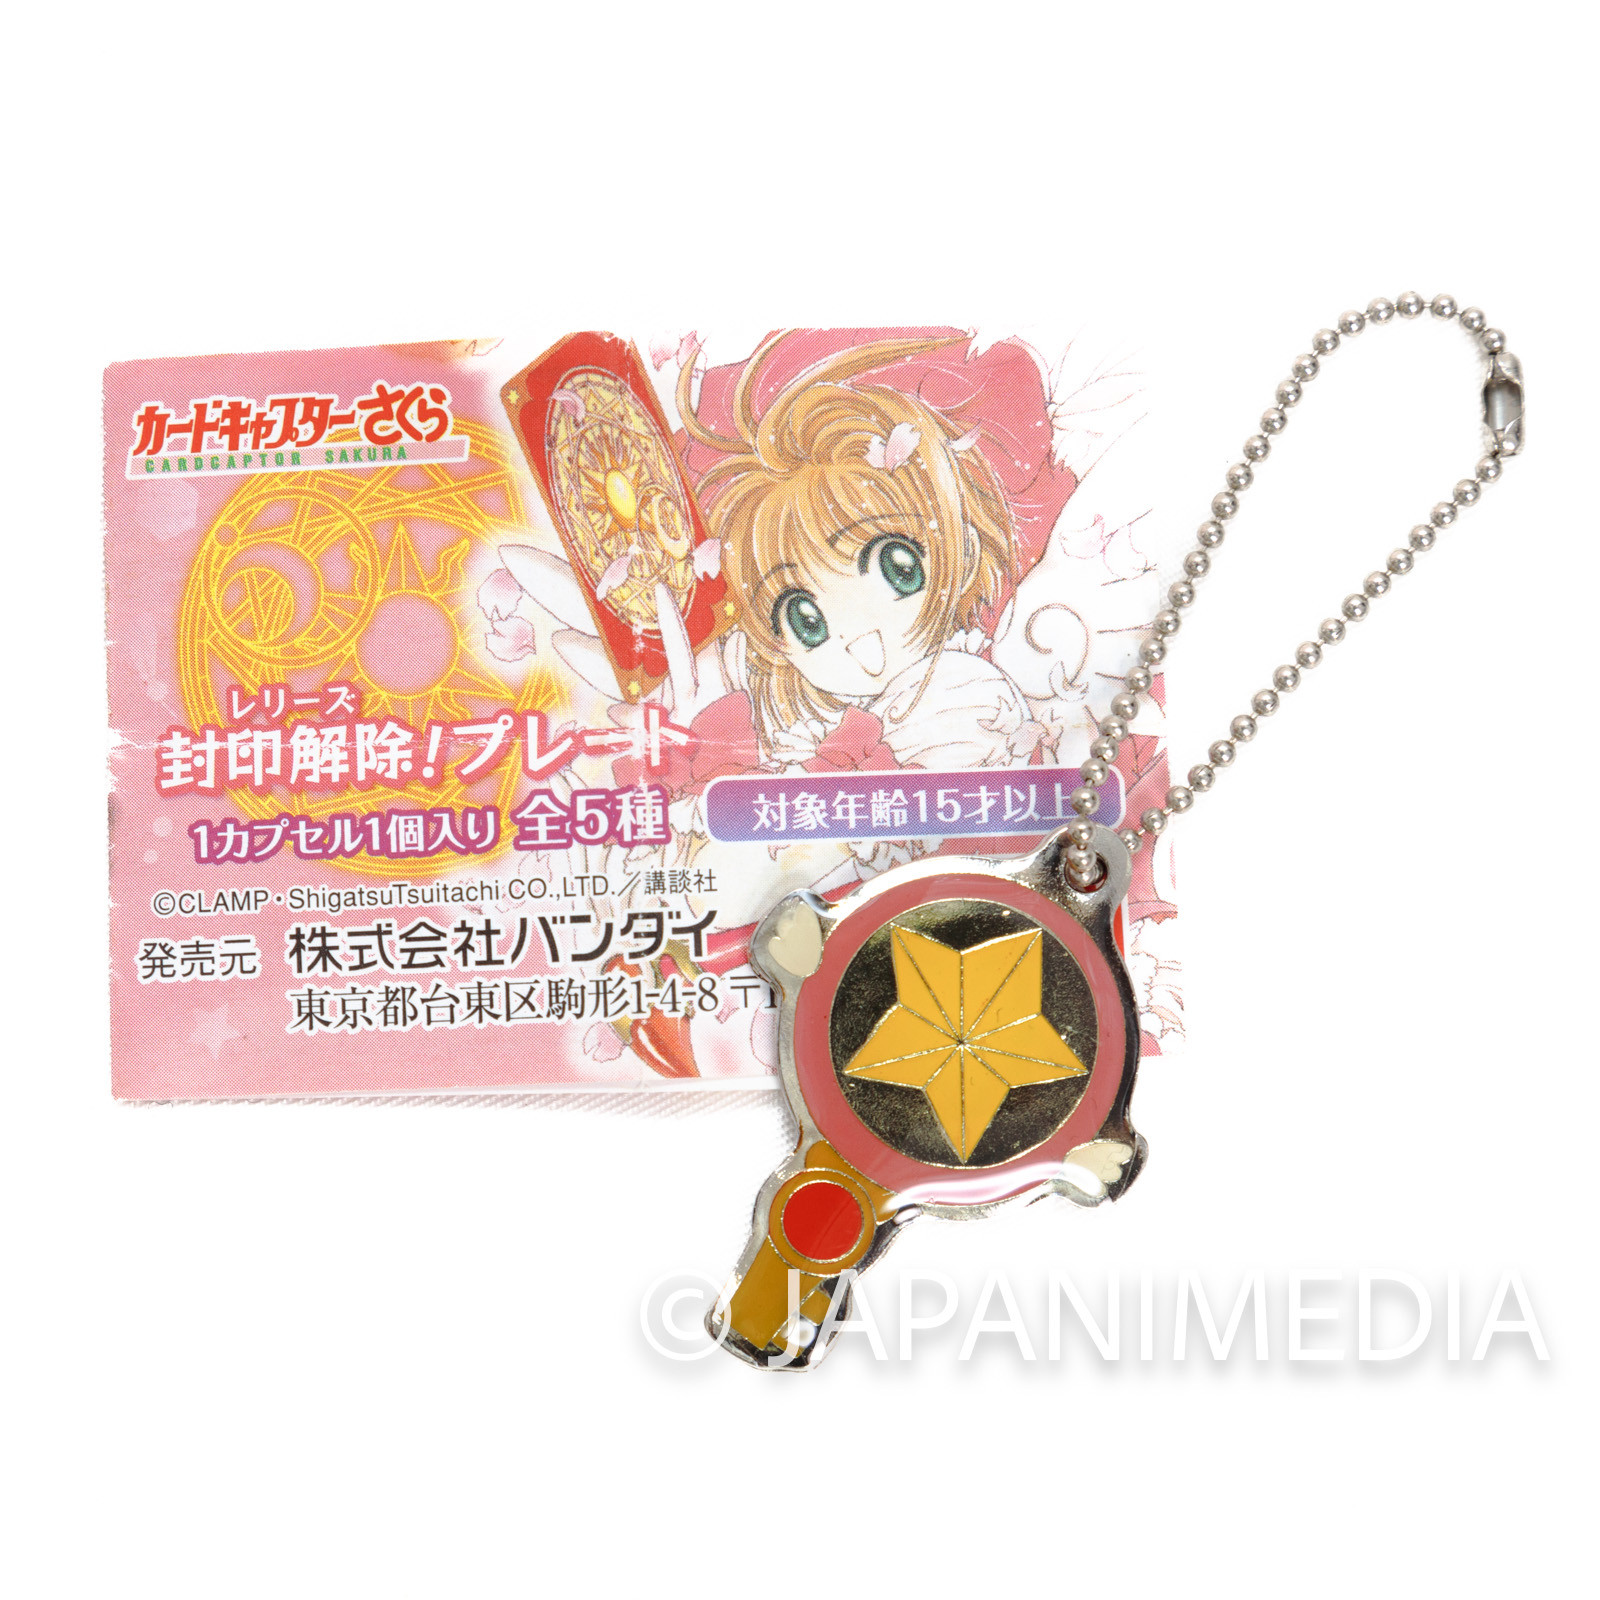 Cardcaptor Sakura Star key Mascot Ballchain JAPAN